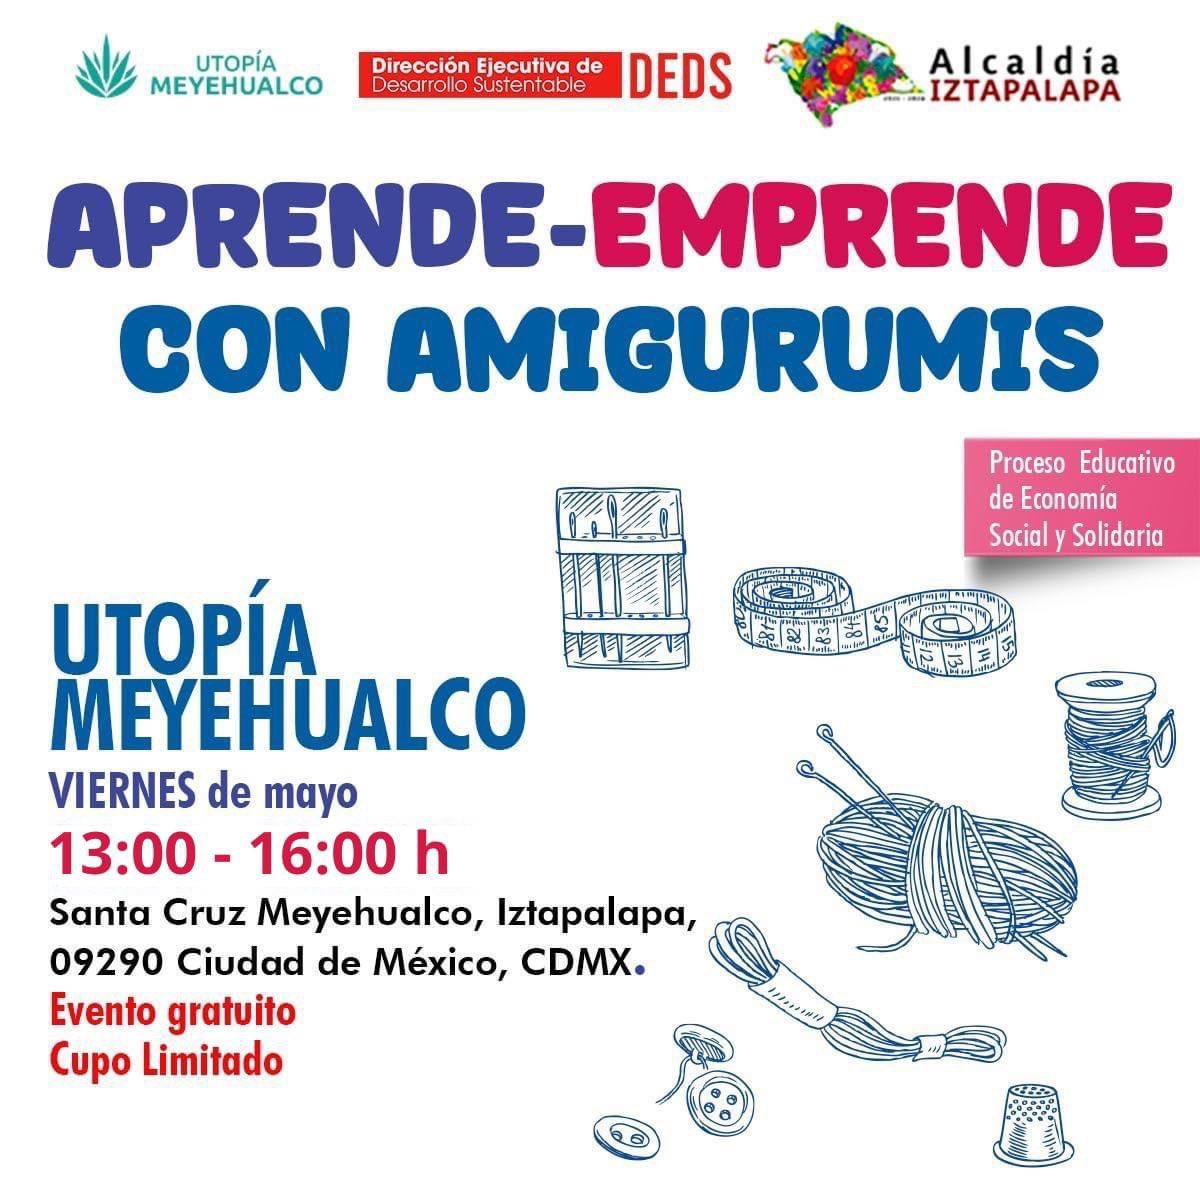 La @Alc_Iztapalapa te invita a participar en el #TallerEducativo “Aprende – Emprende con Amigurumis', todos los viernes de mayo, de 13:00 a 16:00 horas, en la #UtopíaMeyehualco. Regístrate aquí 👉🏻docs.google.com/forms/d/e/1FAI… ¡Te esperamos!